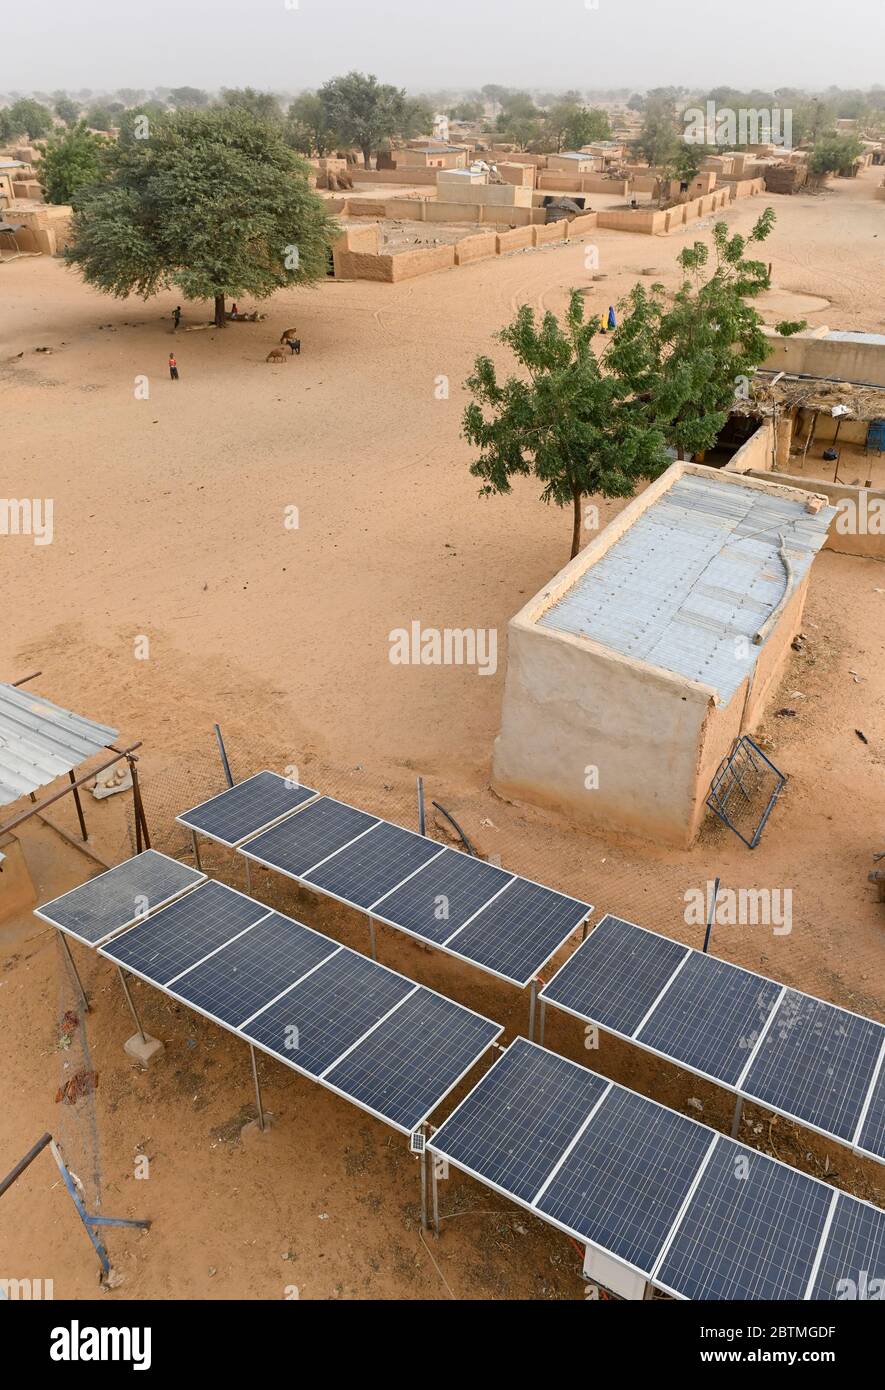 NIGER, Maradi, Dorf Dan Bako, Photovoltaik-Solaranlage für Wasserpumpen / Solaranlage zum Wasser pumpen Stockfoto